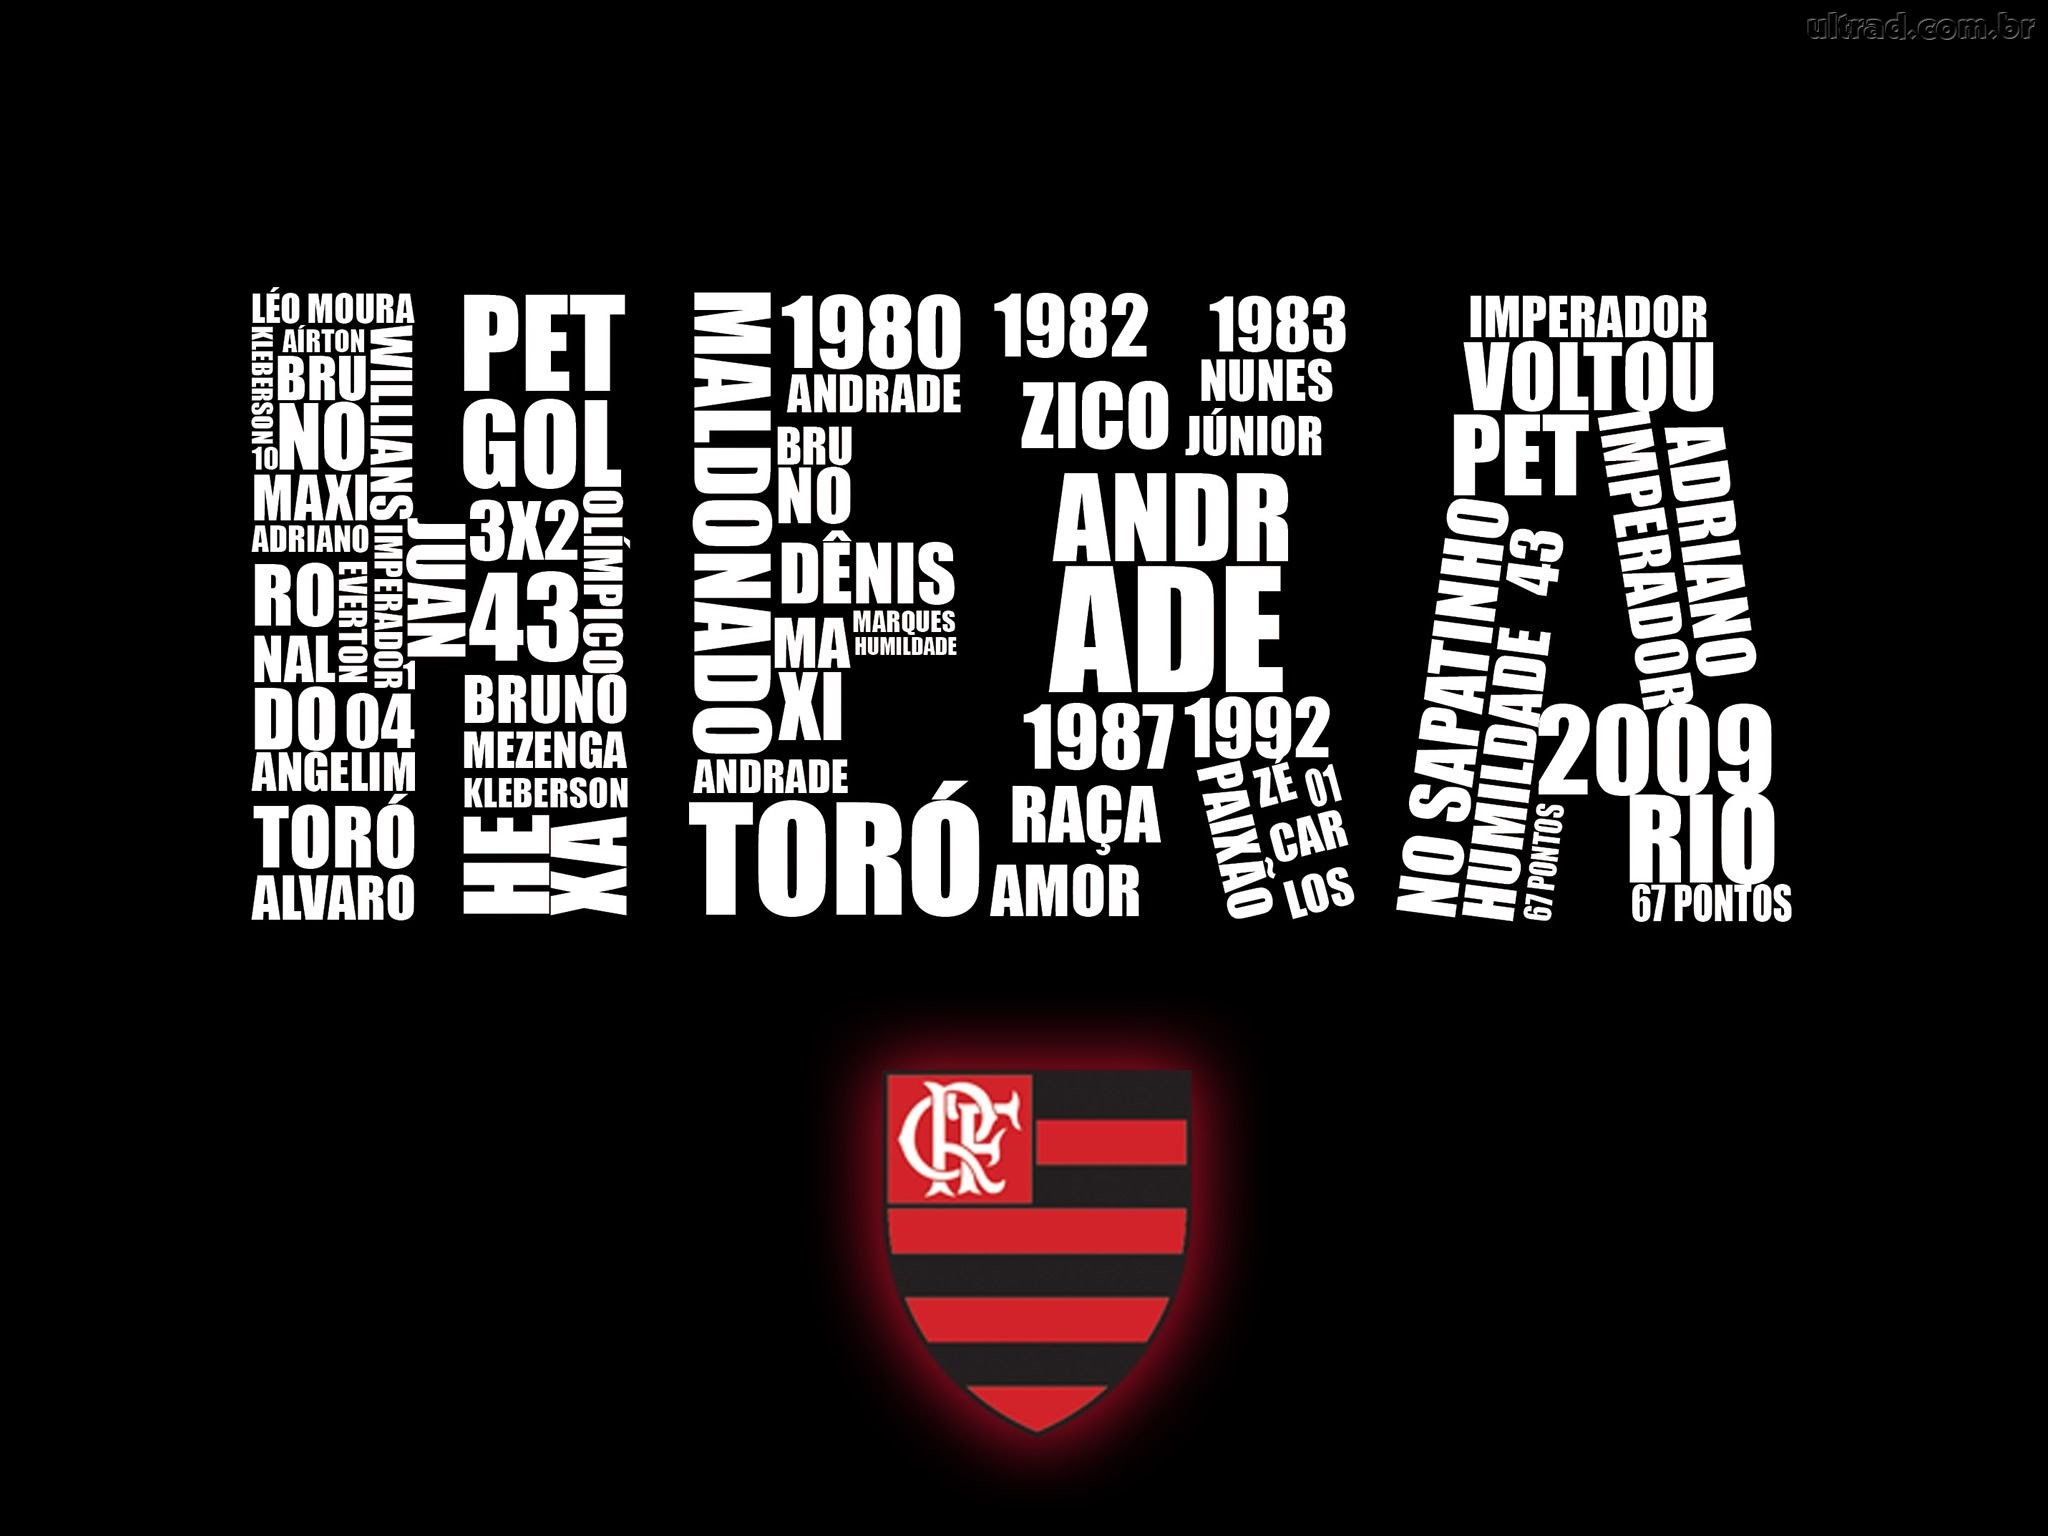 2048x1536 Papel de Paredes do Flamengo - Os Melhores Wallpapers - 2015/2016 - YouTube